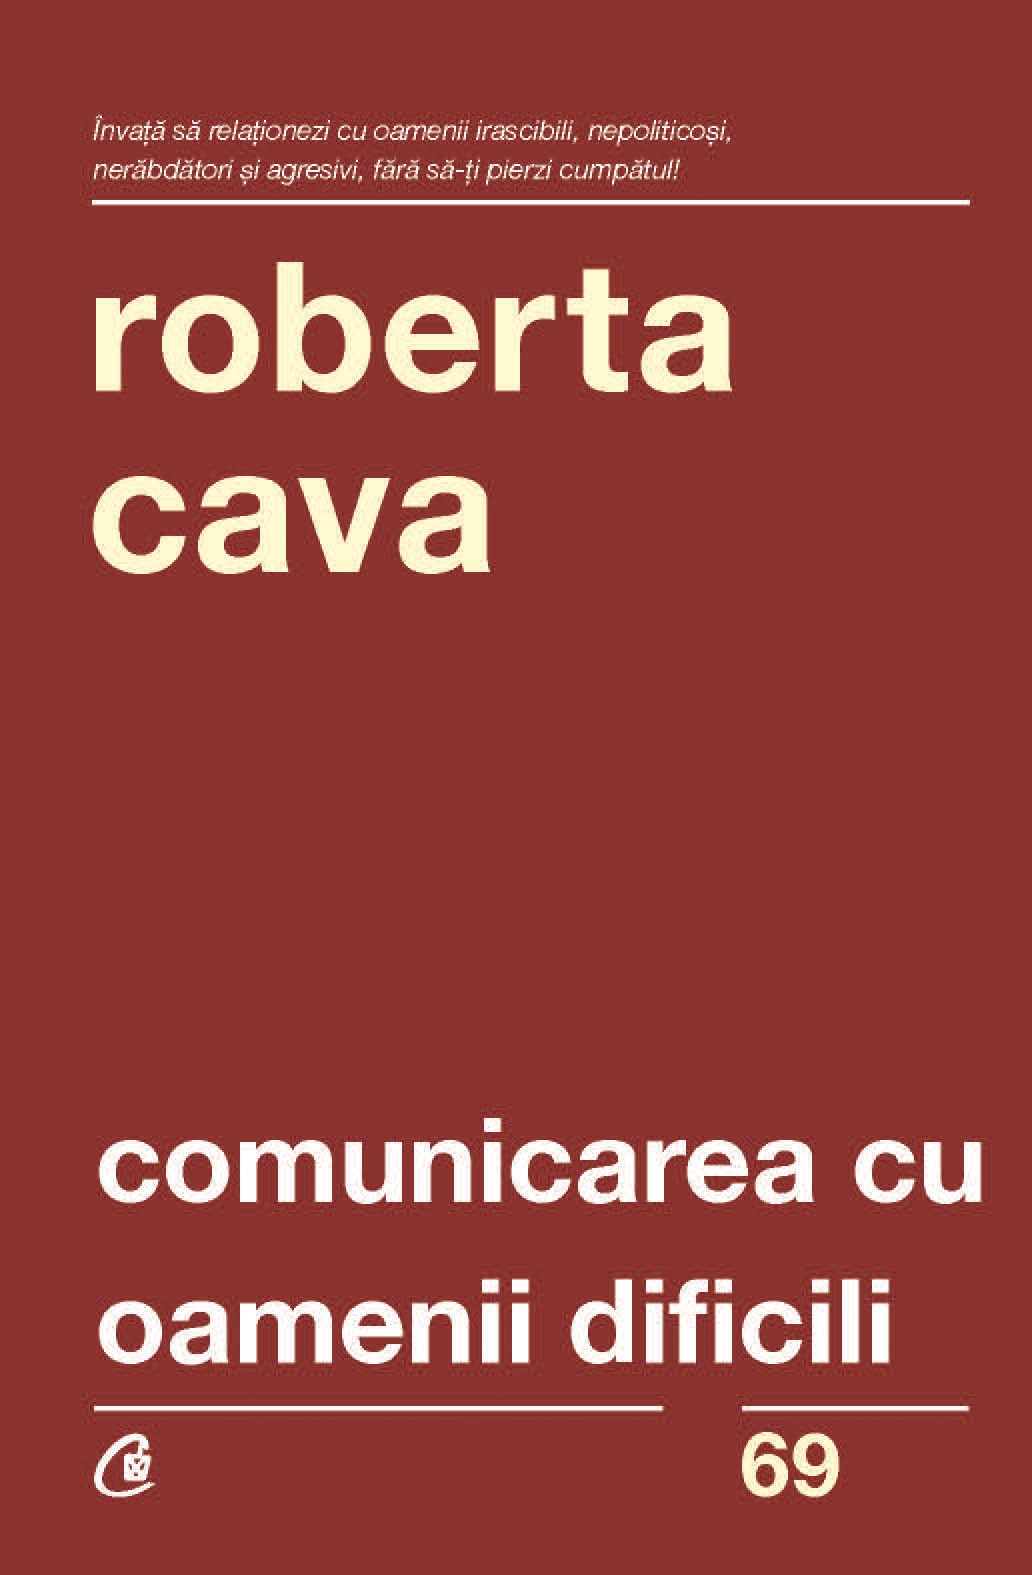 Comunicarea cu oamenii dificili | Roberta Cava carturesti 2022